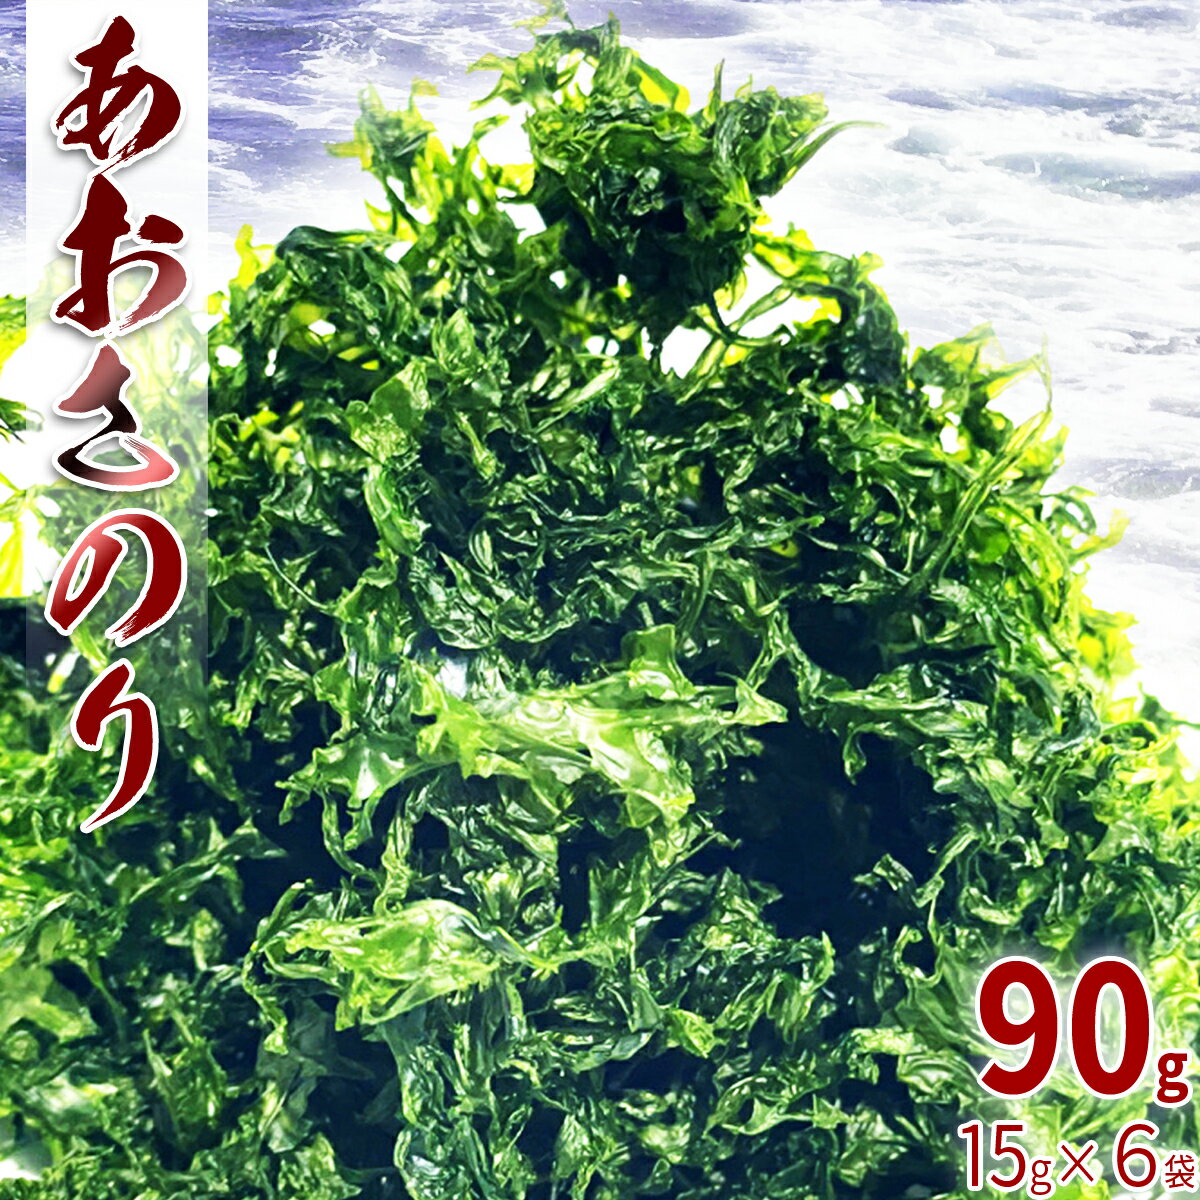  海藻 あおさのり 乾燥 90g 15g×6袋 あおさ あおさ海苔 アオサ アオサノリ アオサ海苔 乾物 食物繊維 ビタミン 海の緑黄色野菜